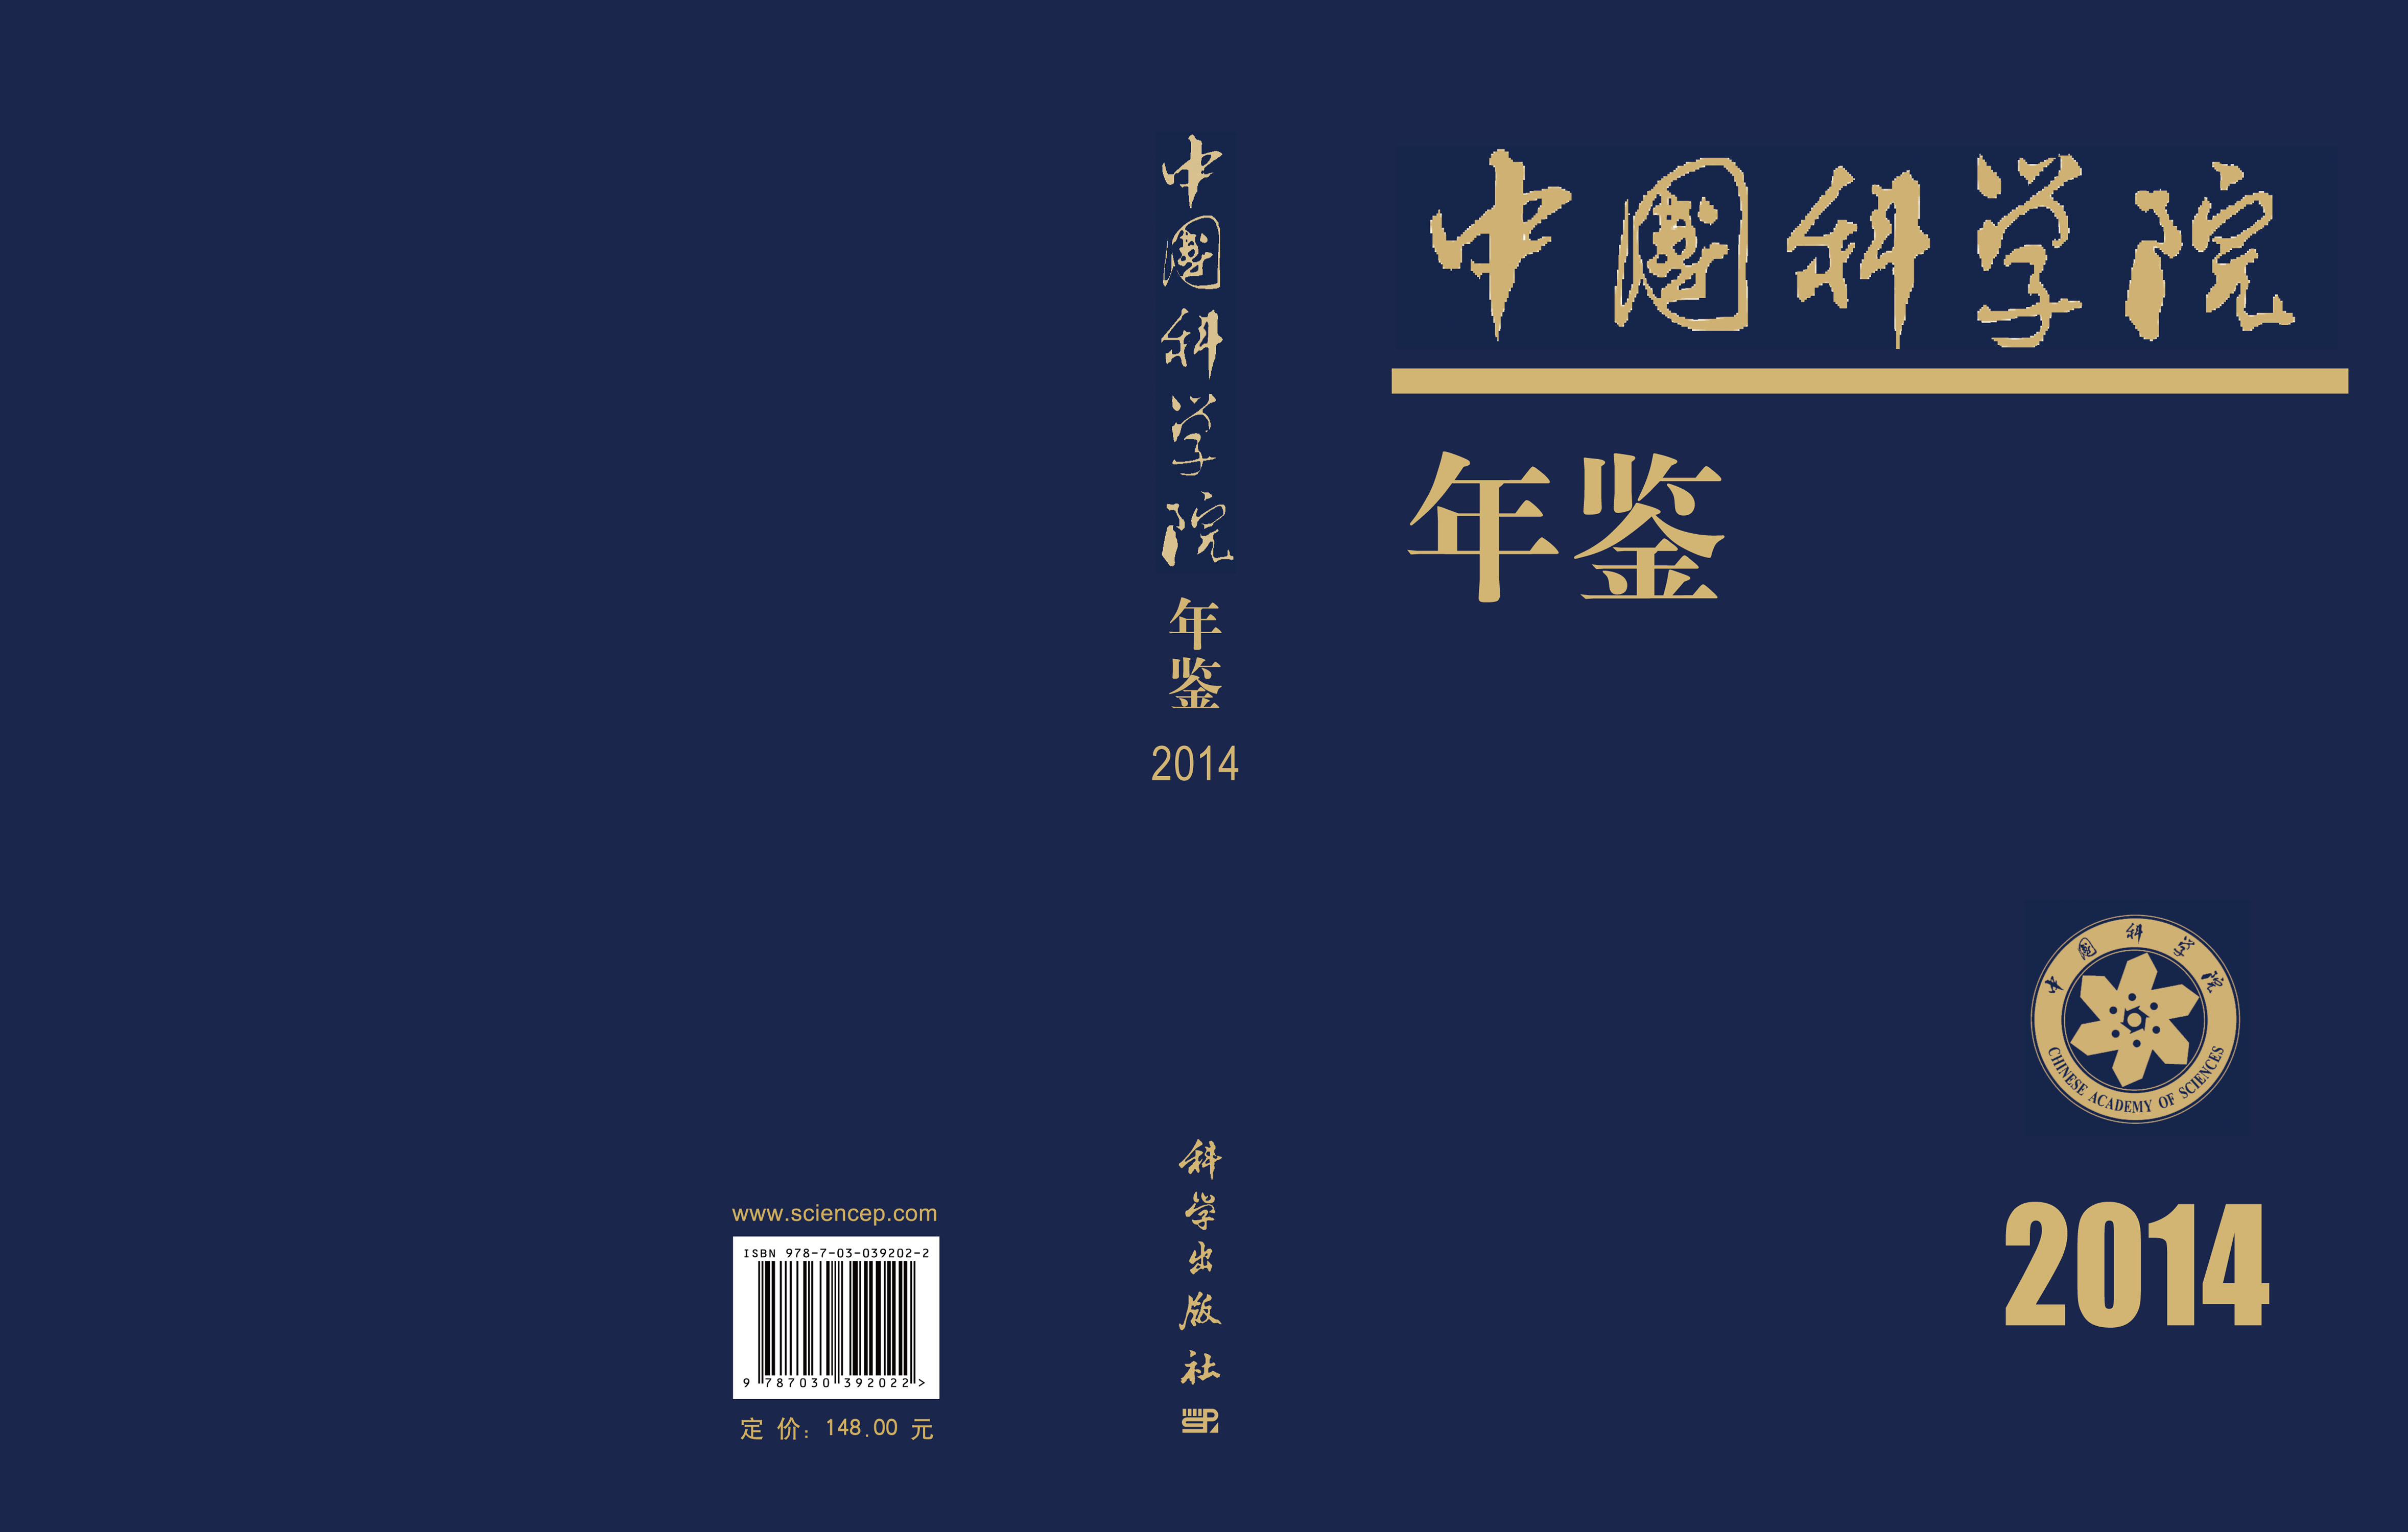 中国科学院年鉴 2014